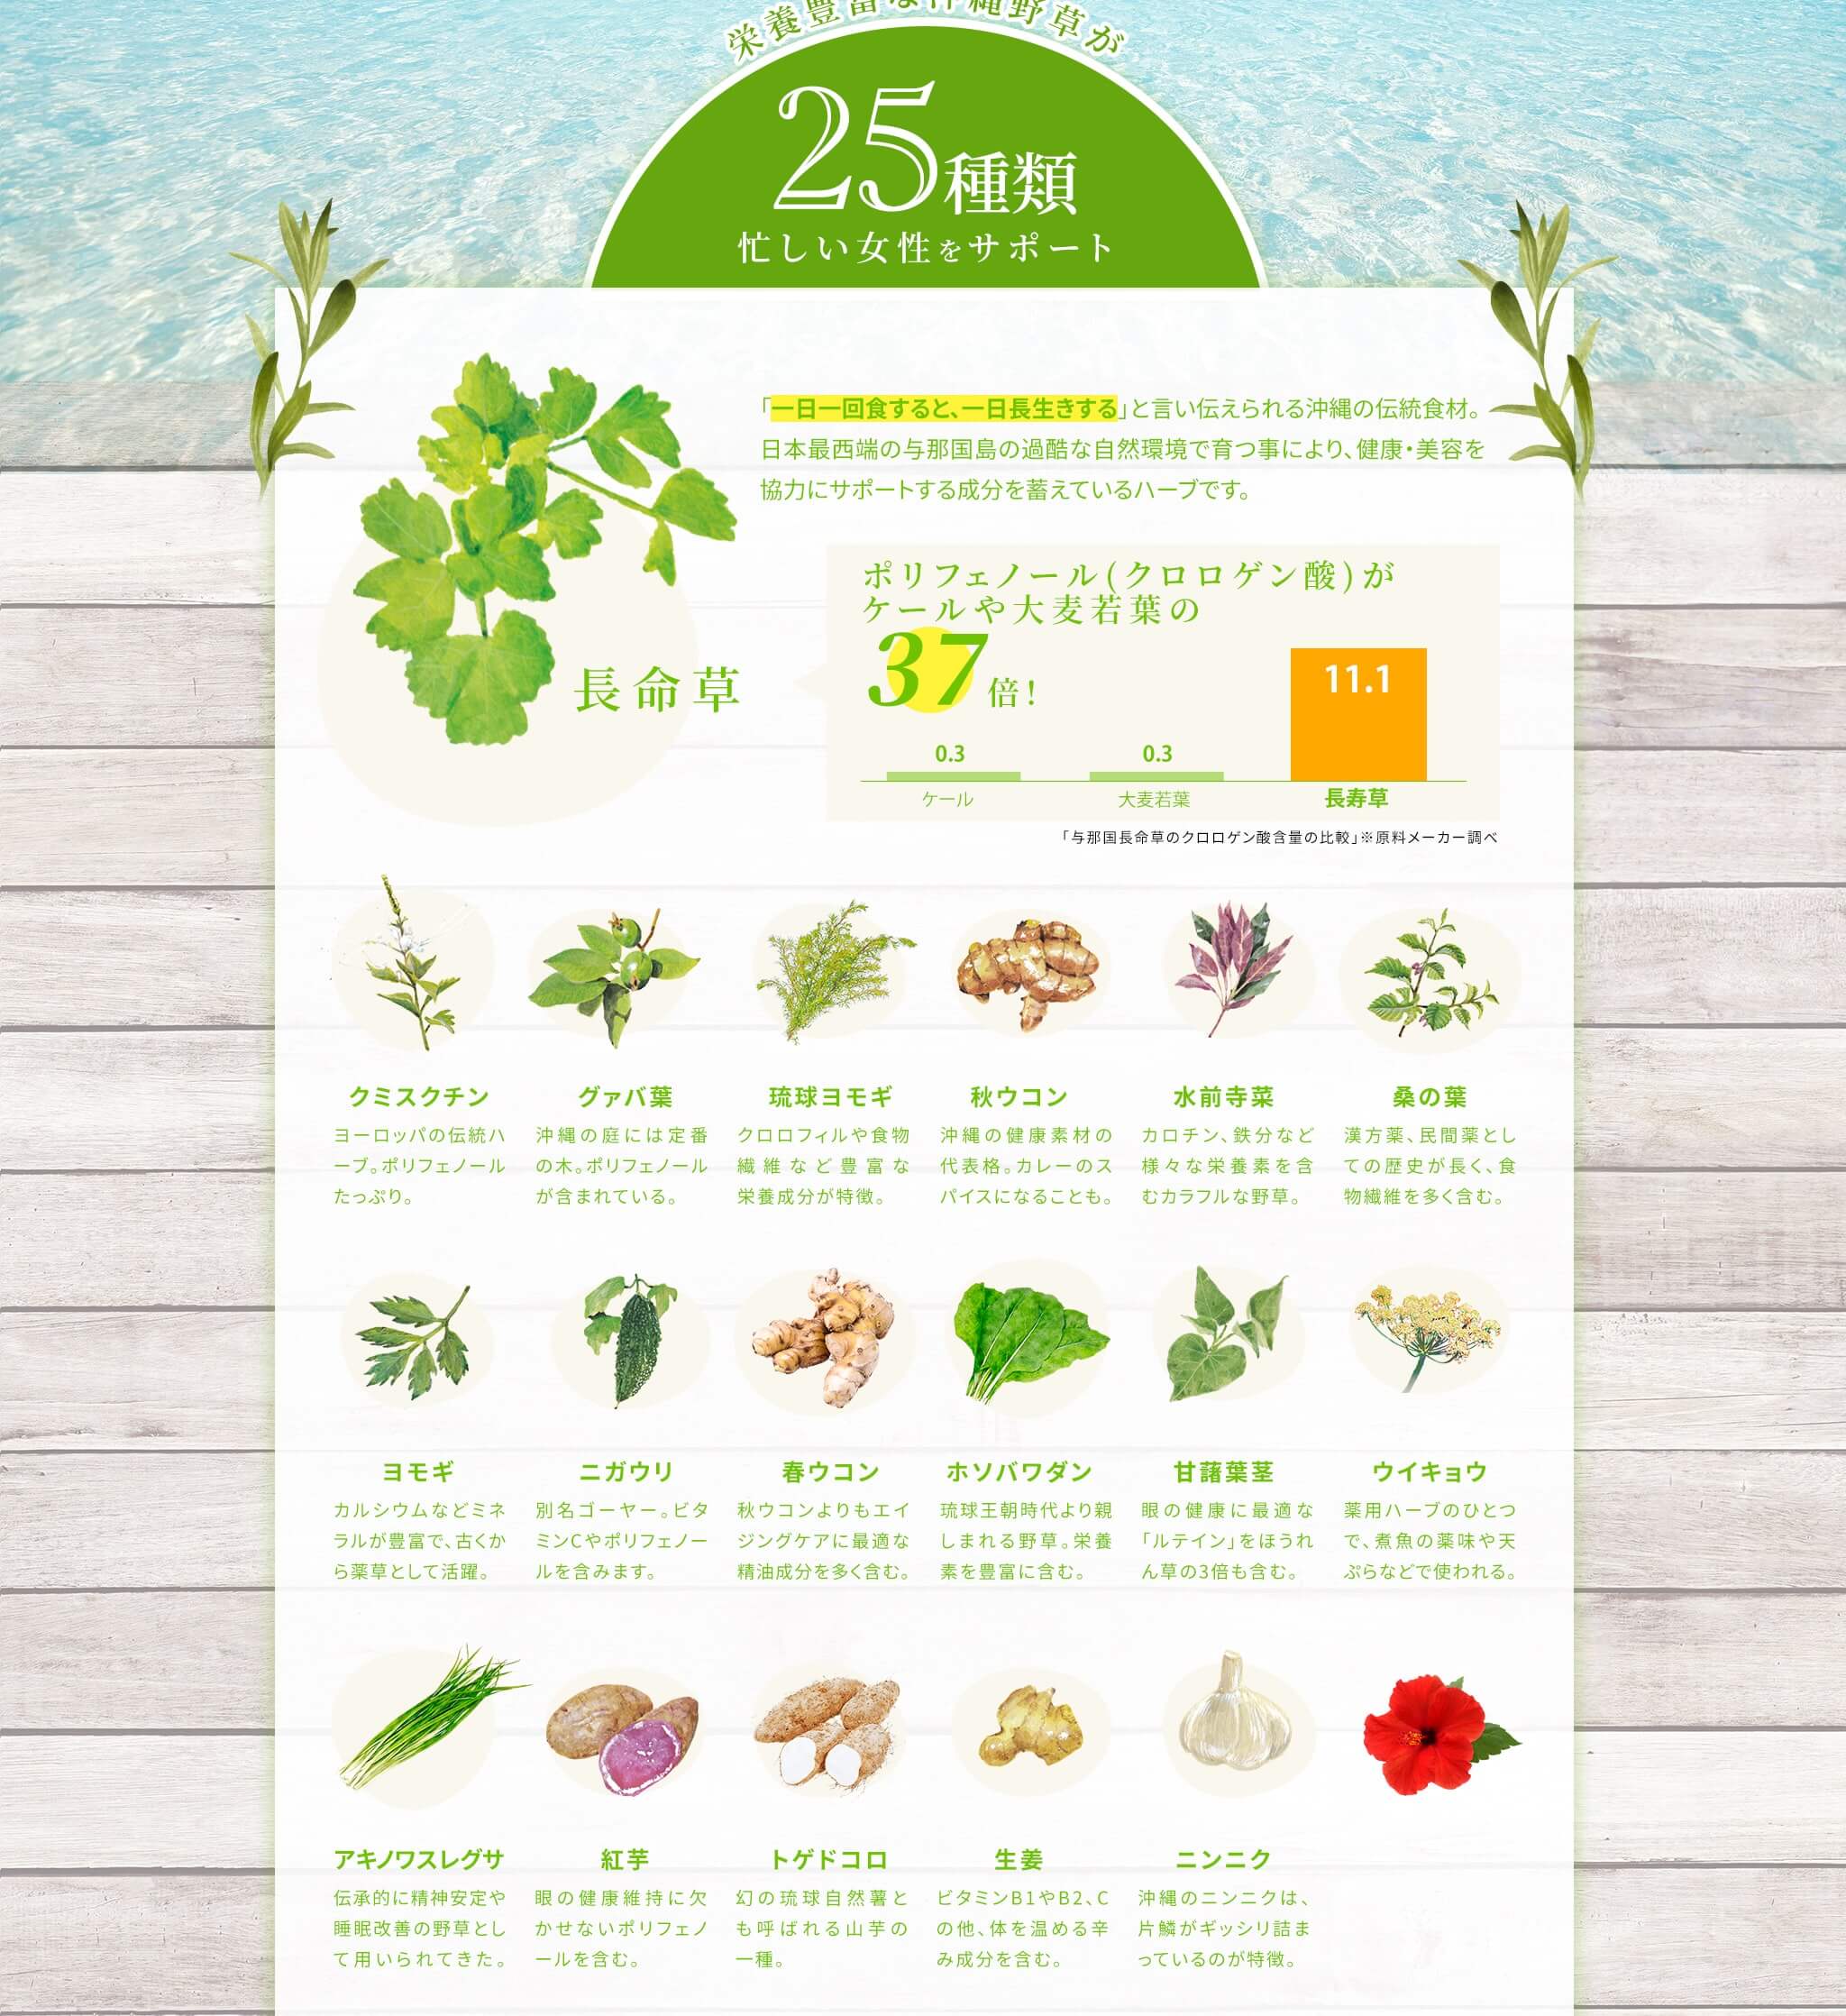 栄養豊富な沖縄野草が25種類忙しい女性をサポート [クミスクチン] ヨーロッパの伝統ハーブ。ポリフェノールたっぷり。 [グァバ葉] 沖縄の庭には定番の木。ポリフェノールが含まれている。 [琉球ヨモギ] クロロフィルや食物繊維など豊富な栄養成分が特徴。 [秋ウコン] 沖縄の健康素材の代表格。カレーのスパイスになることも。 [水前寺菜] カロチン、鉄分など様々な栄養素を含むカラフルな野草。 [桑の葉] 漢方薬、民間薬としての歴史が長く、食物繊維を多く含む。 [ヨモギ] カルシウムなどミネラルが豊富で、古くから薬草として活躍。 [ニガウリ] 別名ゴーヤー。ビタミンCやポリフェノールを含みます。 [春ウコン] 秋ウコンよりもエイジングケアに最適な精油成分を多く含む。 [ホソバワダン] 琉球王朝時代より親しまれる野草。栄養素を豊富に含む。 [甘藷葉茎] の健康に最適な「ルテイン」をほうれん草の3倍も含む。 [ウイキョウ] 用ハーブのひとつで、煮魚の薬味や天ぷらなどで使われる。 [アキノワスレグサ] 伝承的に精神安定や睡眠改善の野草として用いられてきた。 [紅芋] 眼の健康維持に欠かせないポリフェノールを含む。 [トゲドコロ] 幻の琉球自然薯とも呼ばれる山芋の一種。 [生姜] ビタミンB1やB2、Cの他、体を温める辛み成分を含む。 [ニンニク] 沖縄のニンニクは、片鱗がギッシリ詰まっているのが特徴。